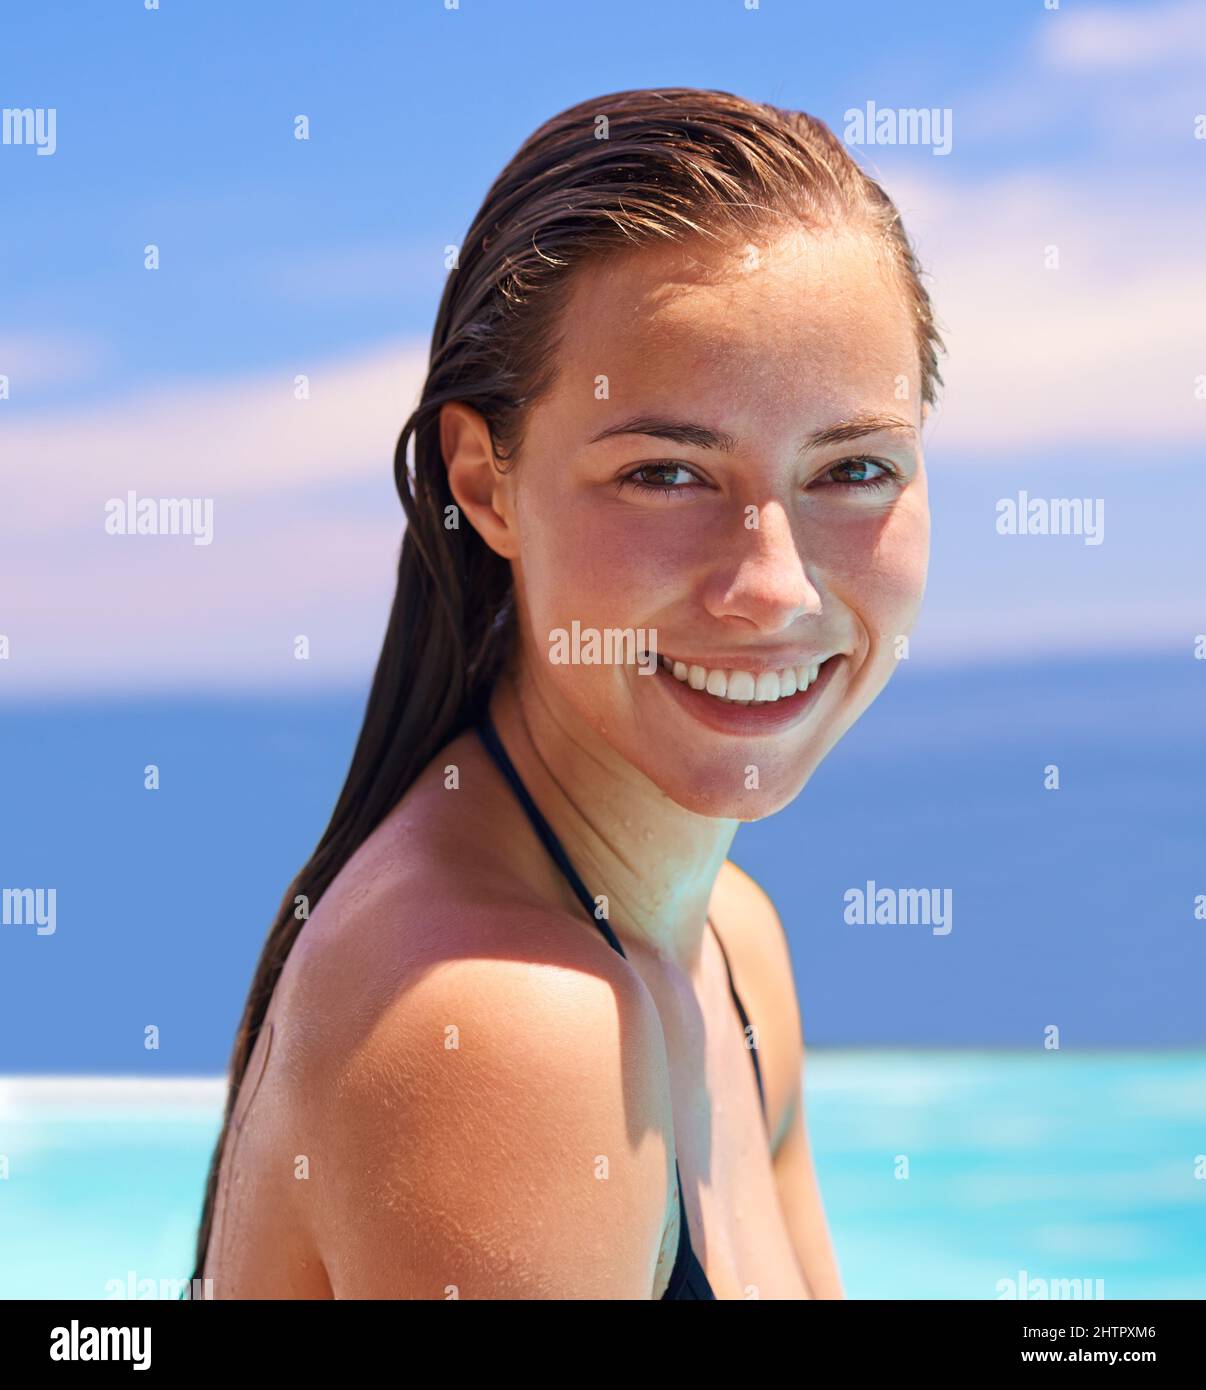 Sie liebt es, im Wasser zu sein. Eine attraktive junge Frau, die gerne schwimmen geht. Stockfoto